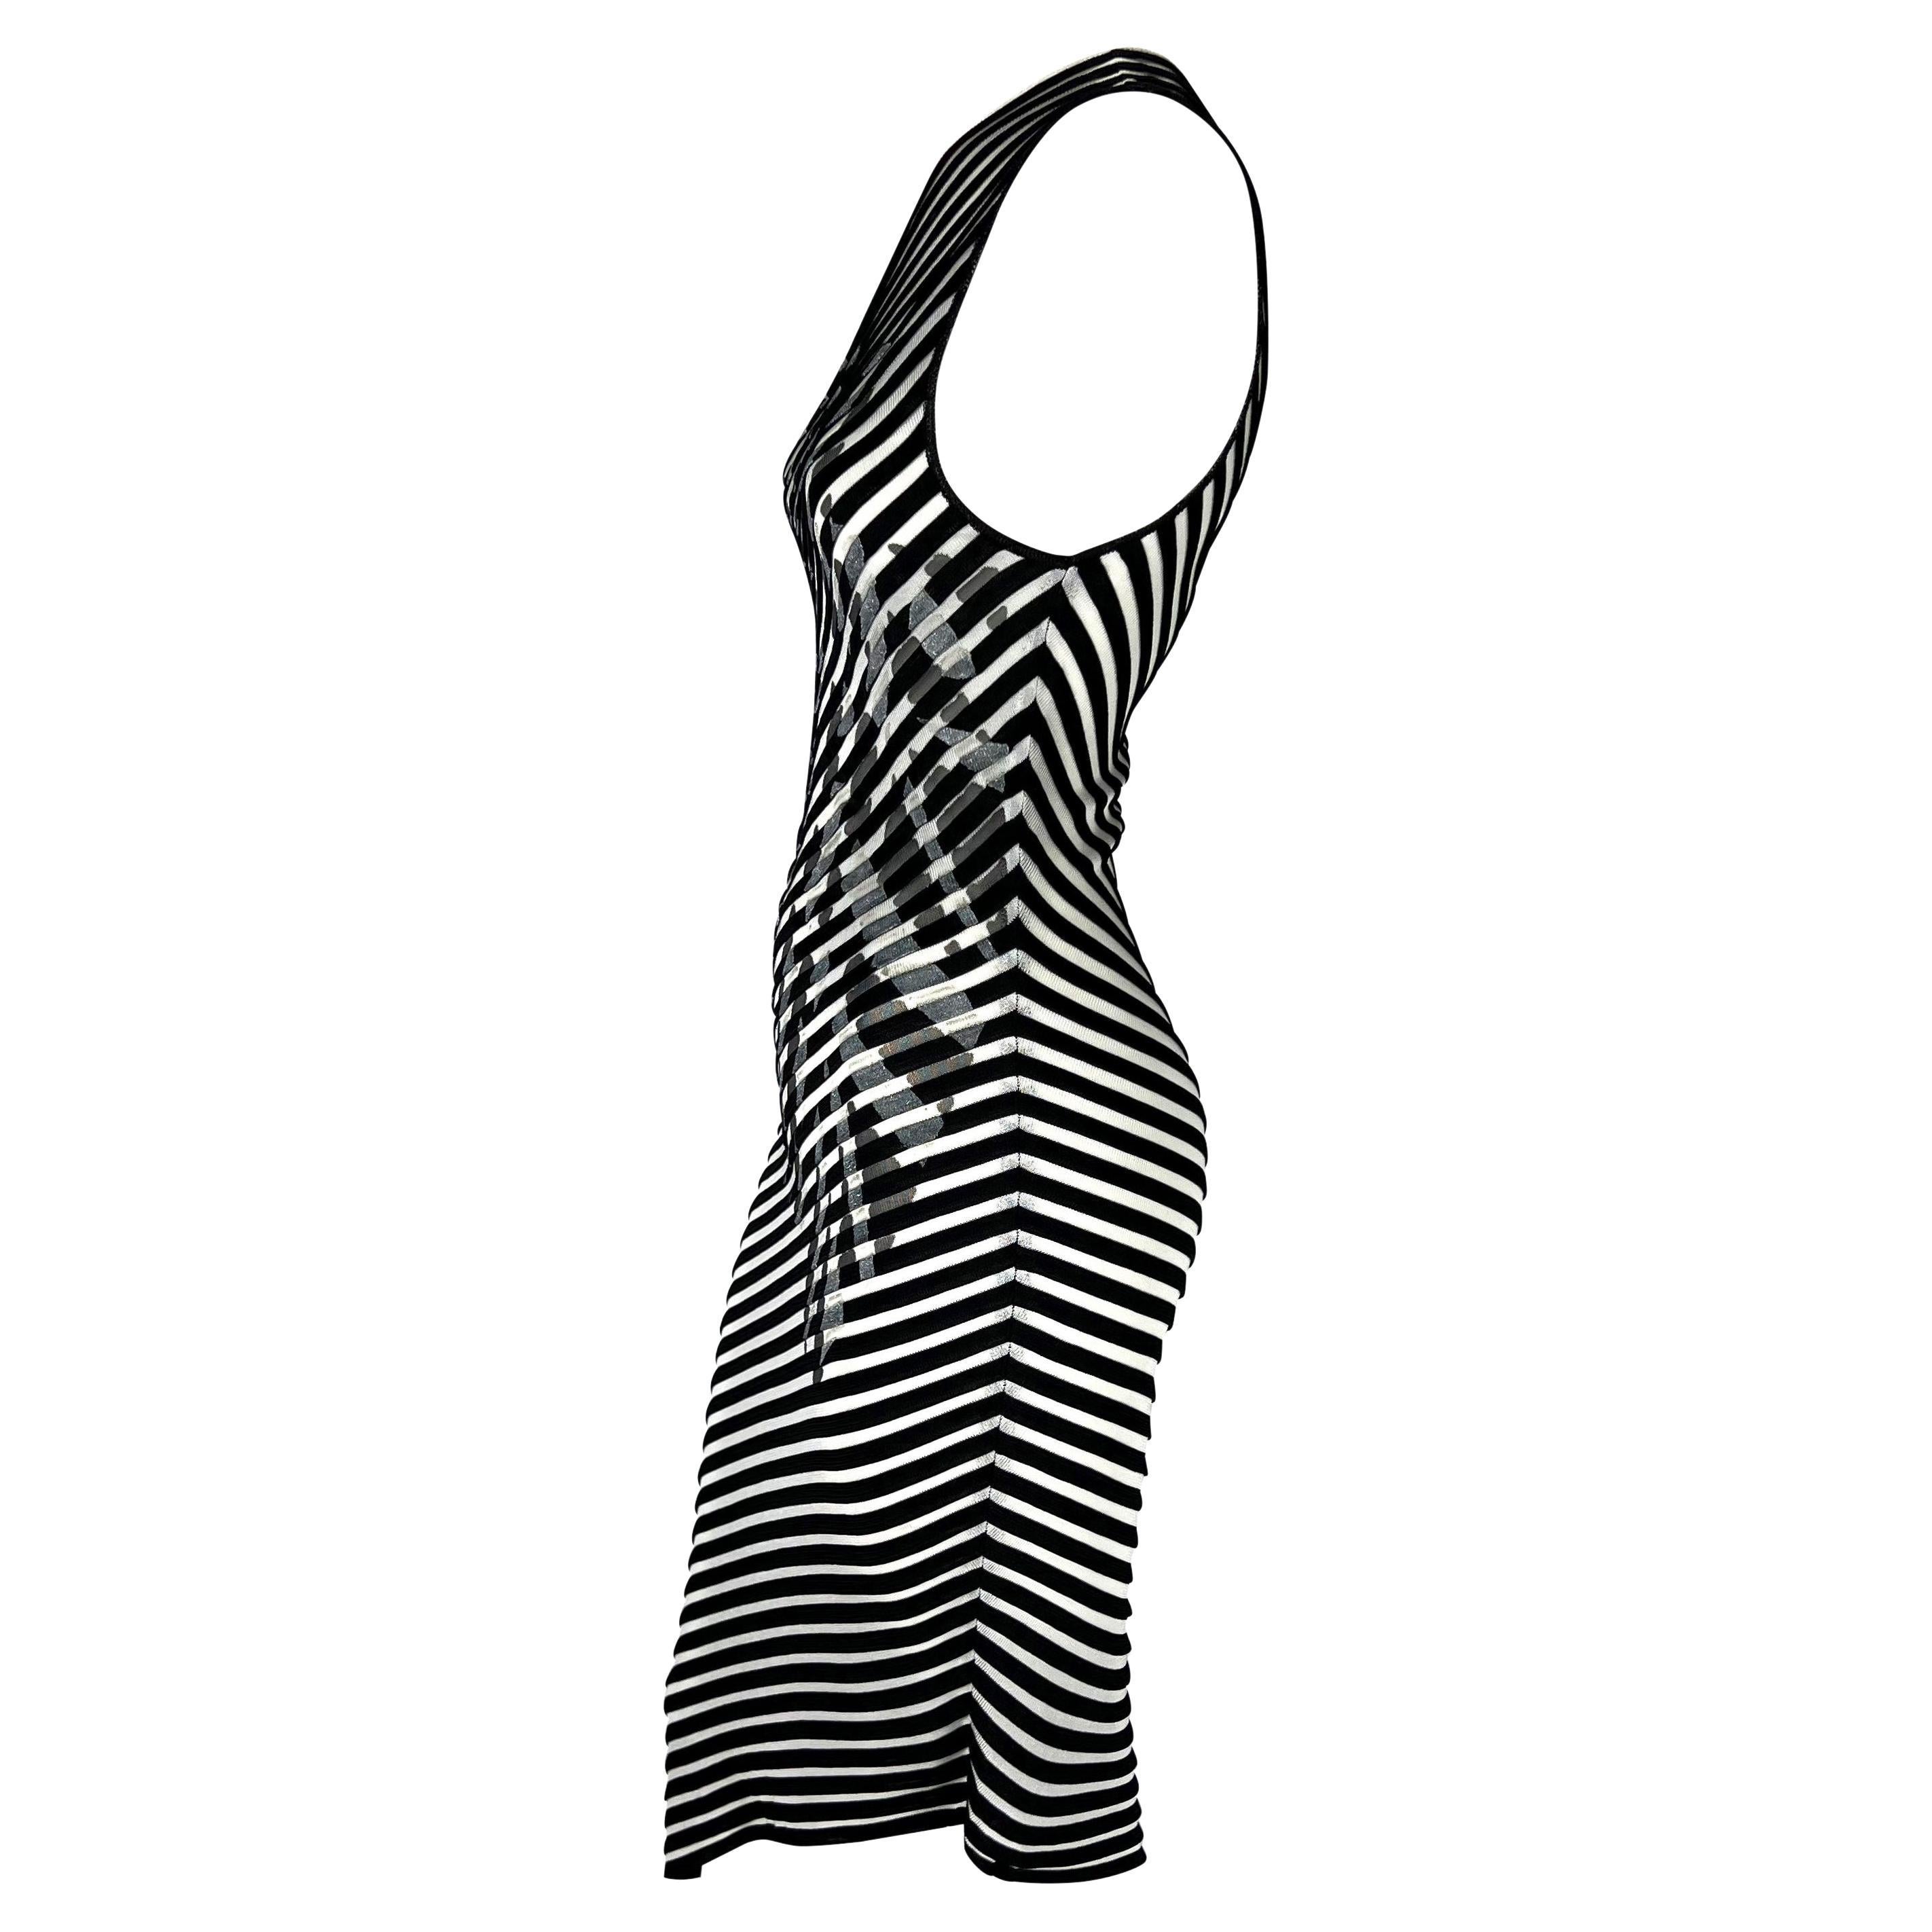 Whiting présente une fabuleuse robe en maille rayée noire et blanche de Thierry Mugler. Datant du début des années 2000, cette fabuleuse robe présente des rayures asymétriques ainsi qu'une encolure et un ourlet asymétriques. La robe est complétée